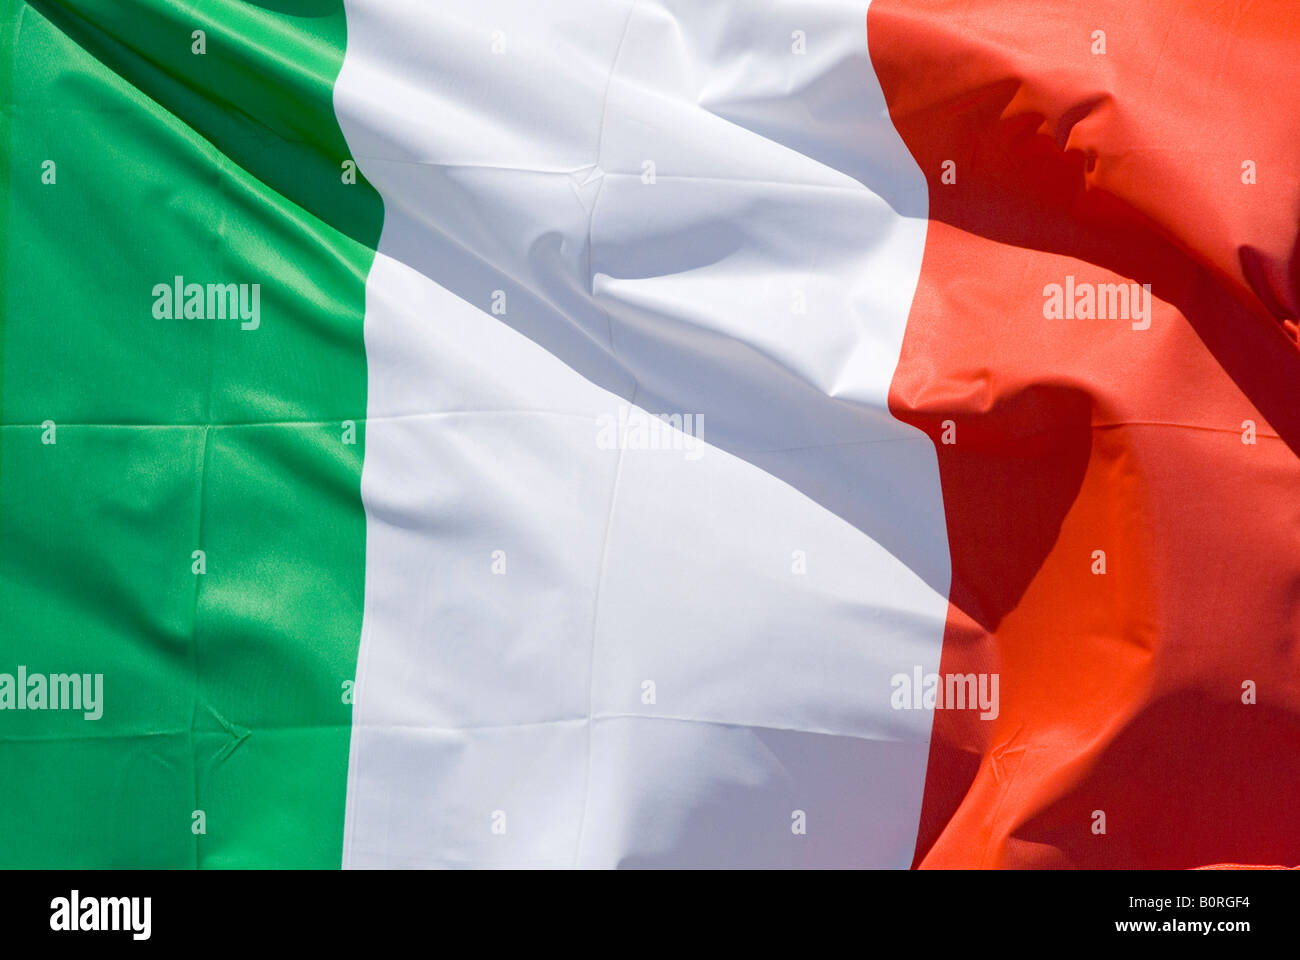 Brandissant le drapeau national de l'Italie dans le vent Banque D'Images